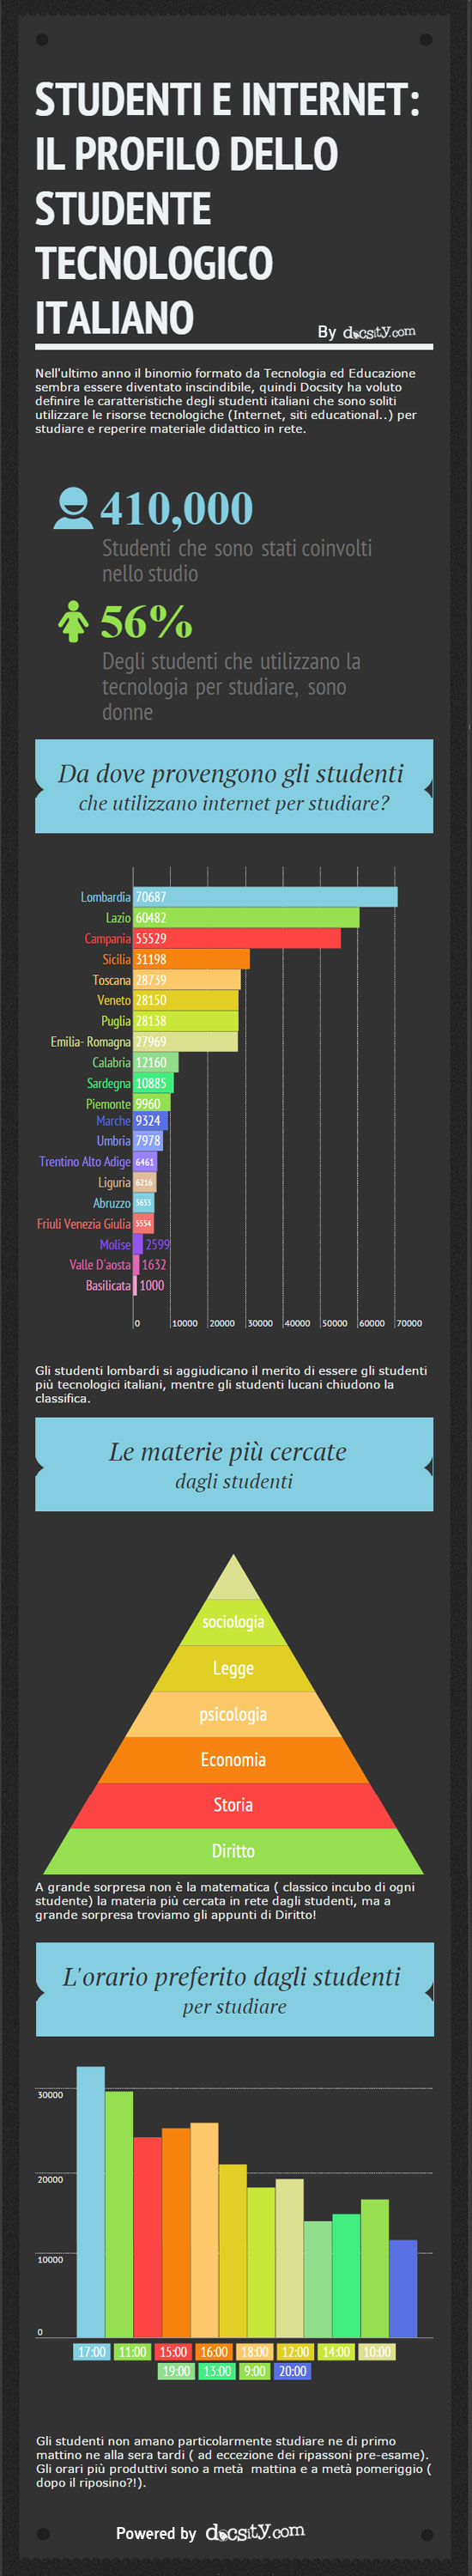 studente-digitale-italiano-infografica